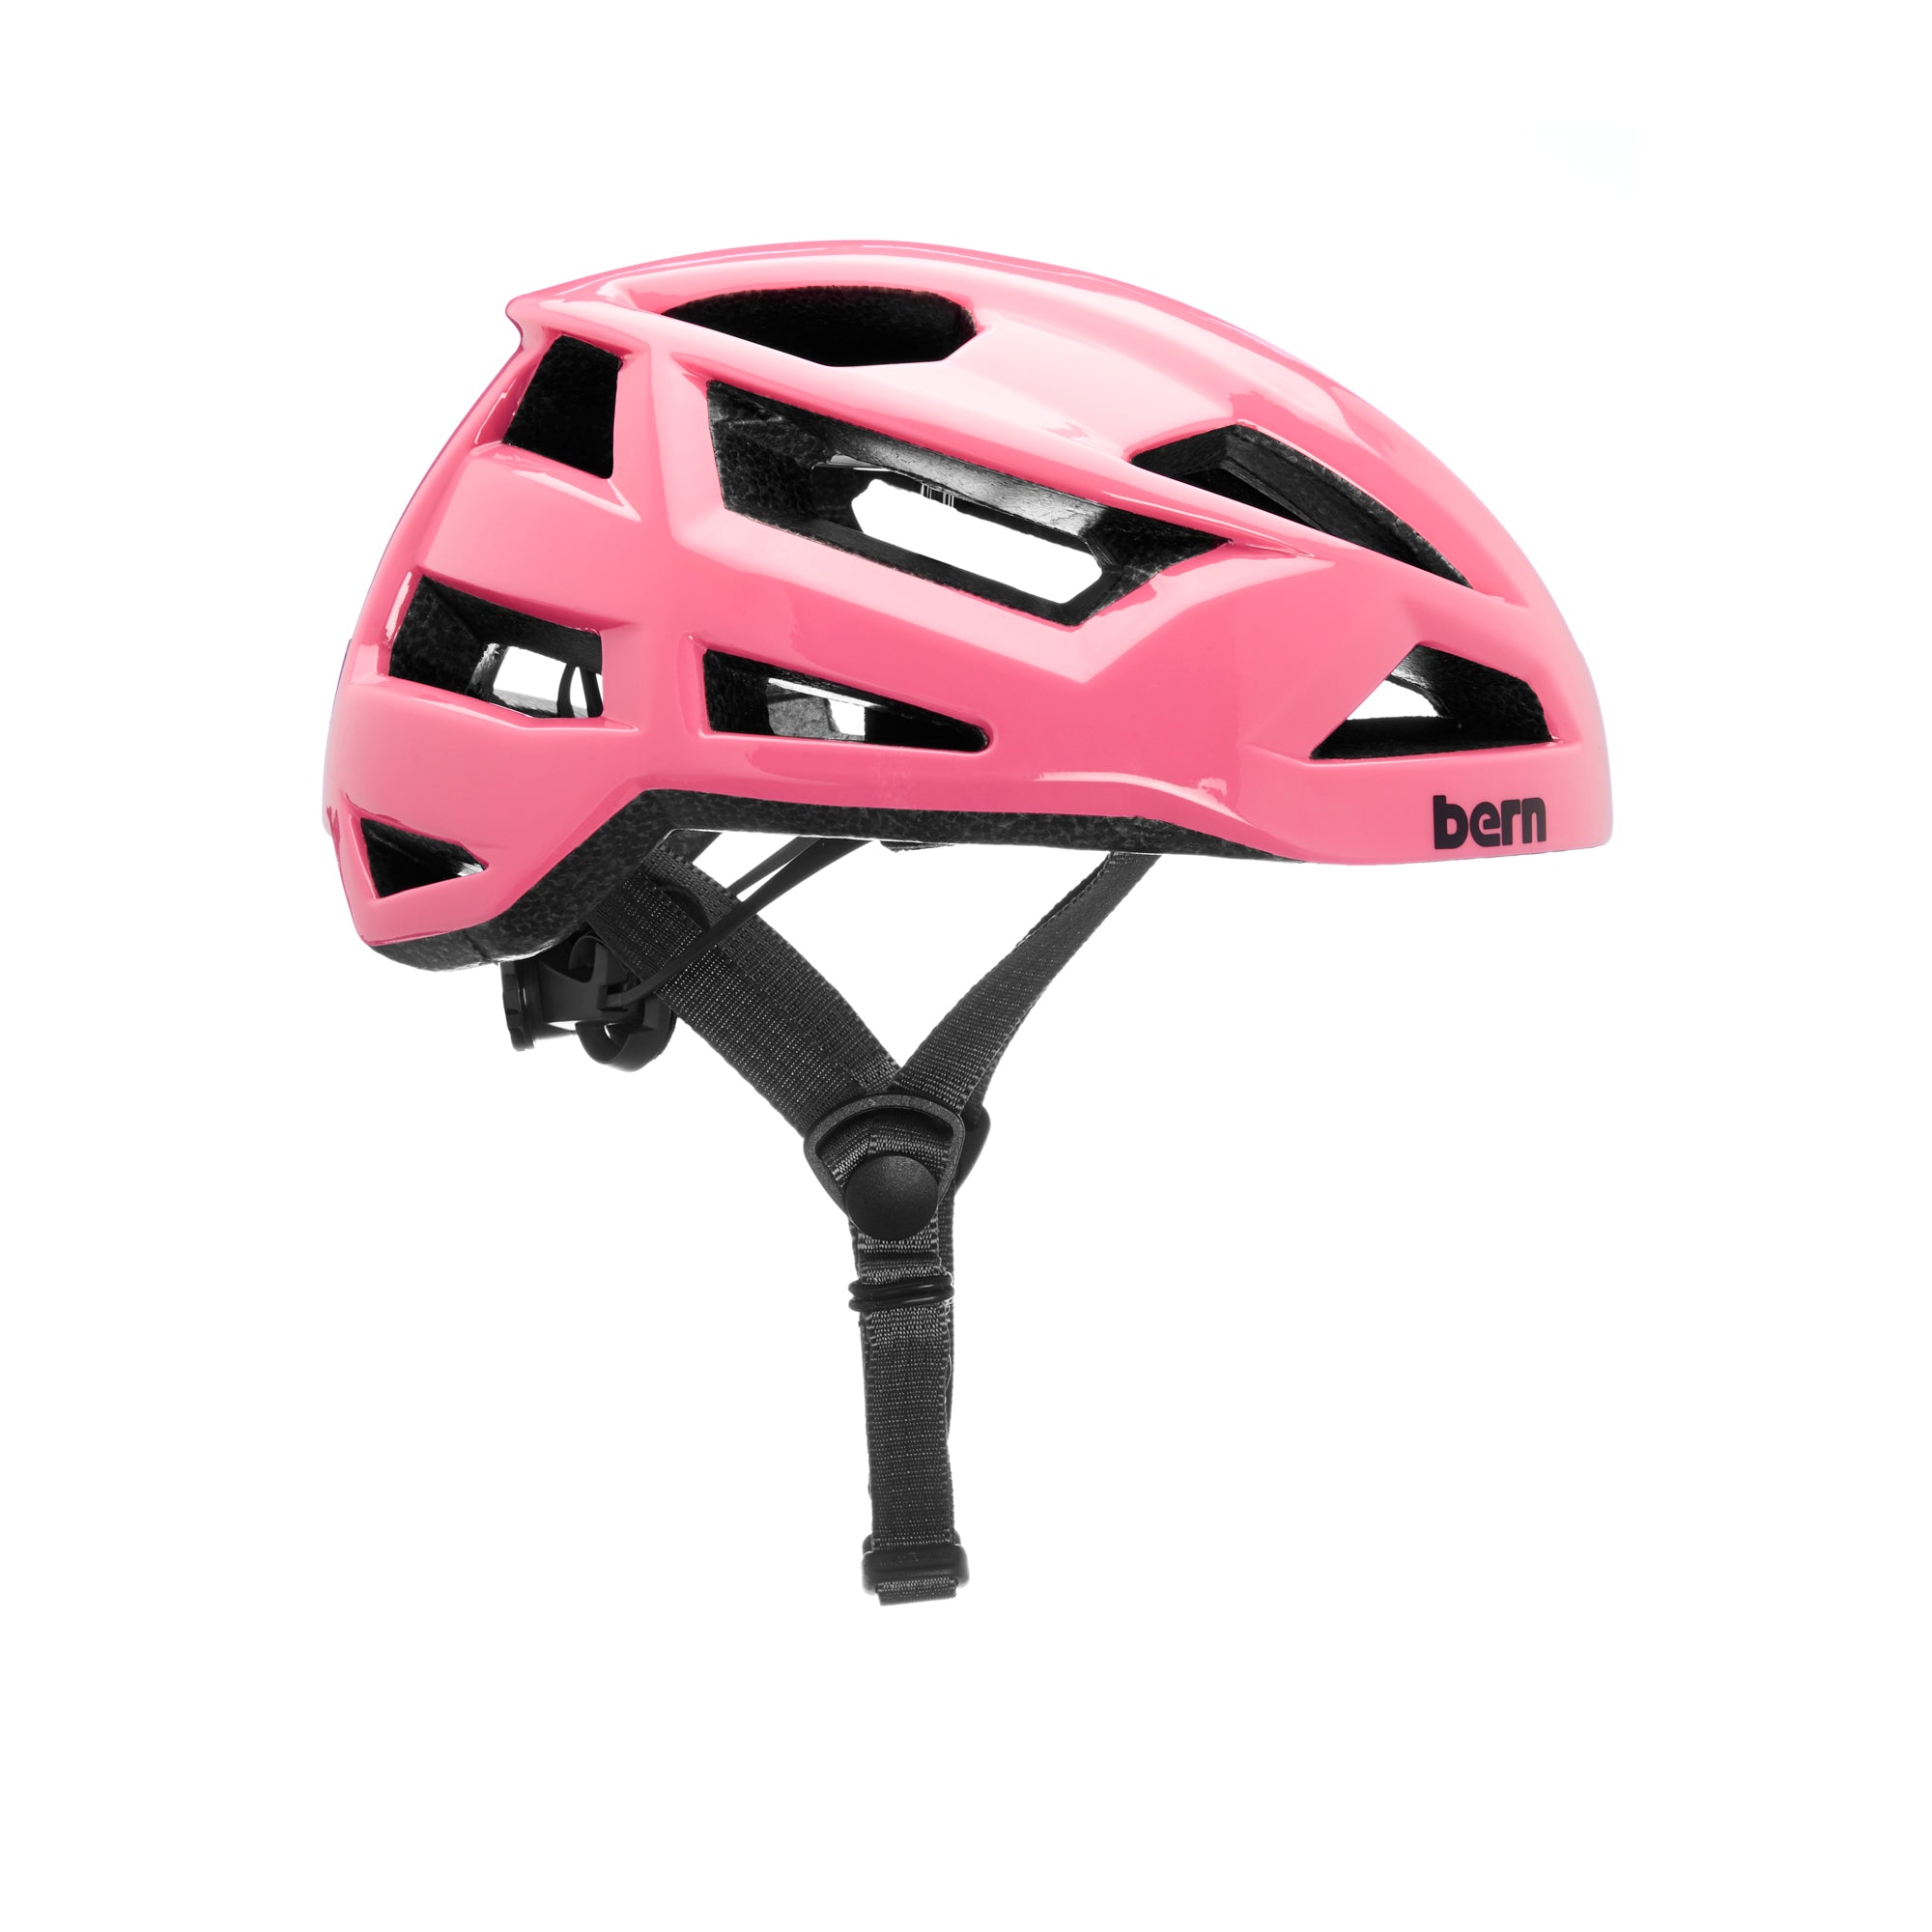 BERN - FL-1 Libre (Hot Pink) Helmet